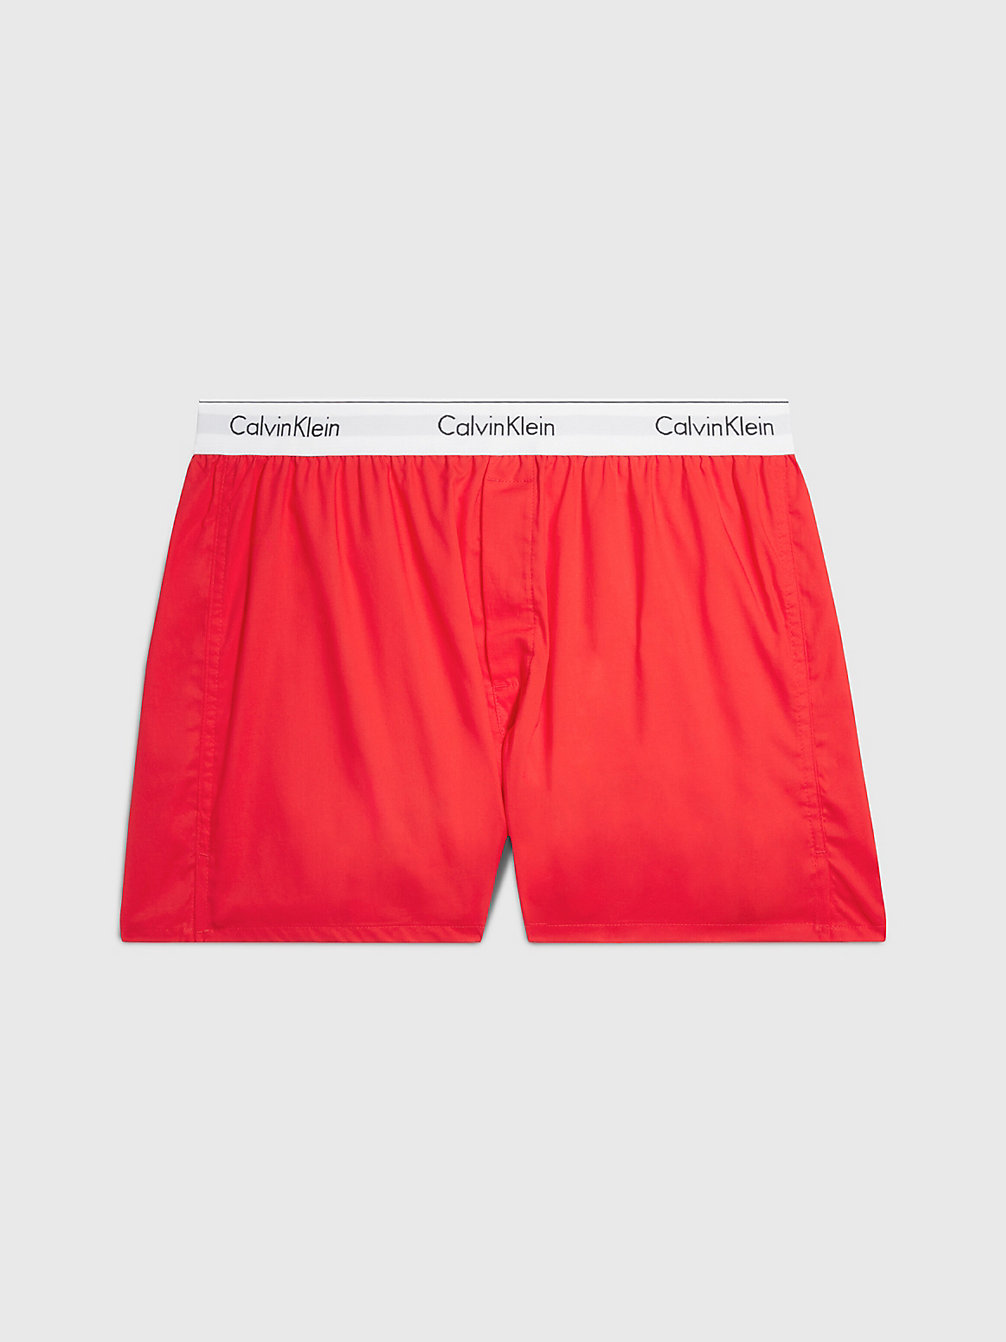 ORANGE ODYSSEY > Slim Fit Boxershorts - Modern Cotton > undefined Herren - Calvin Klein